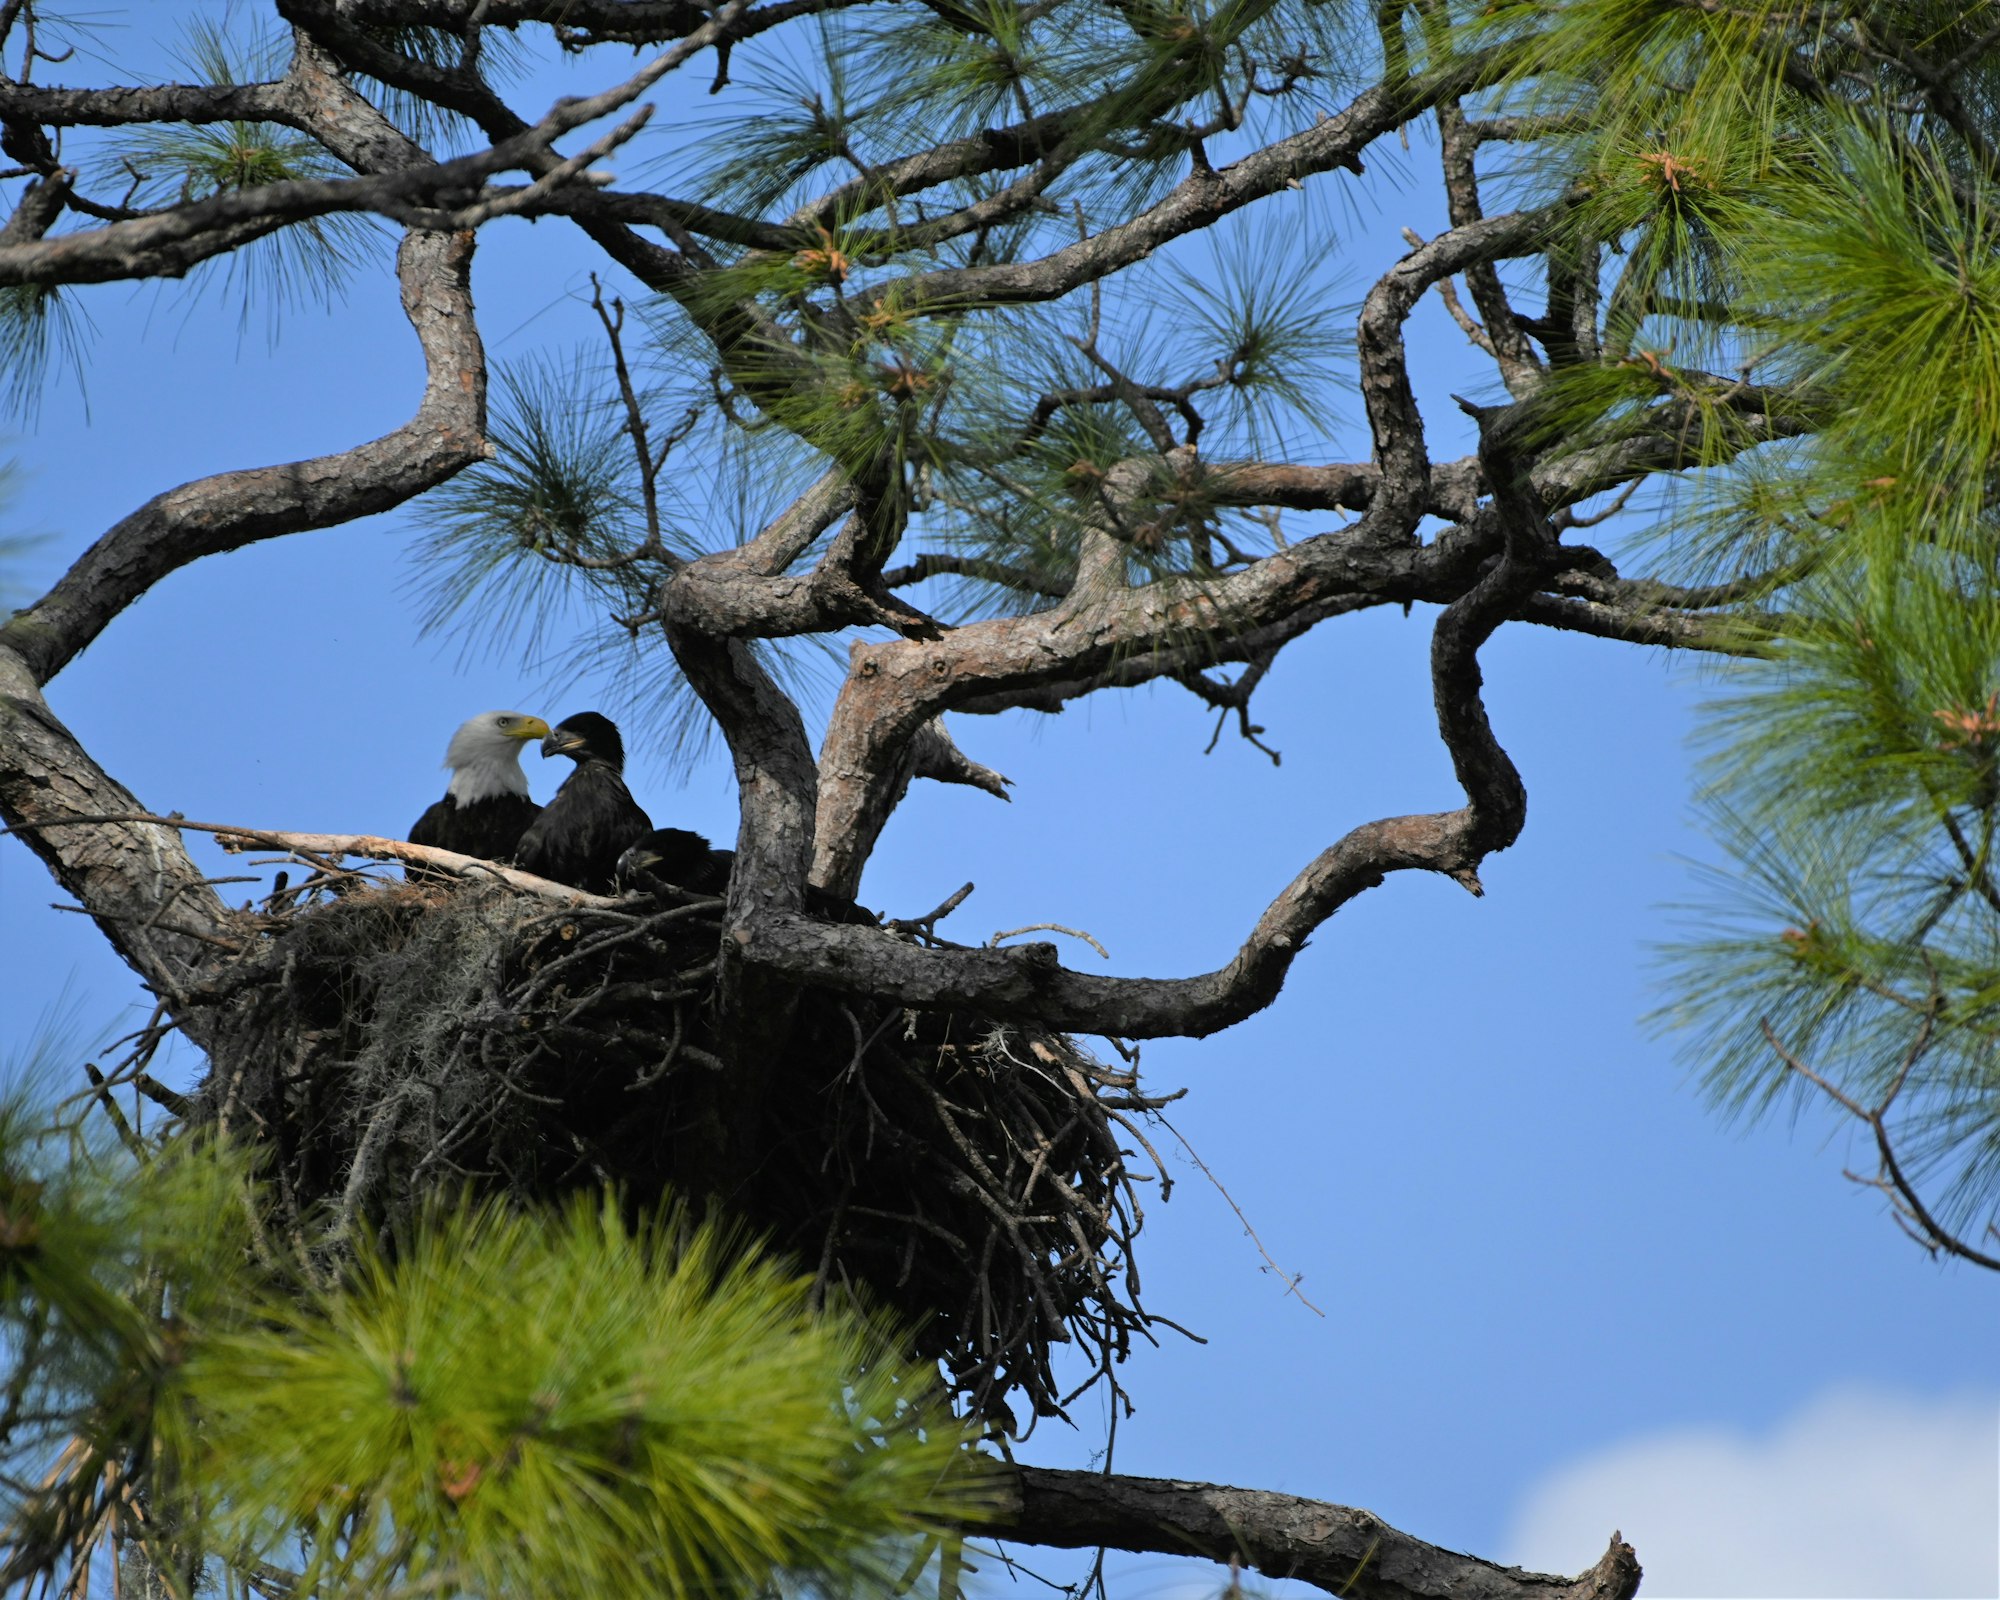 Bald eagle adult and nestling;